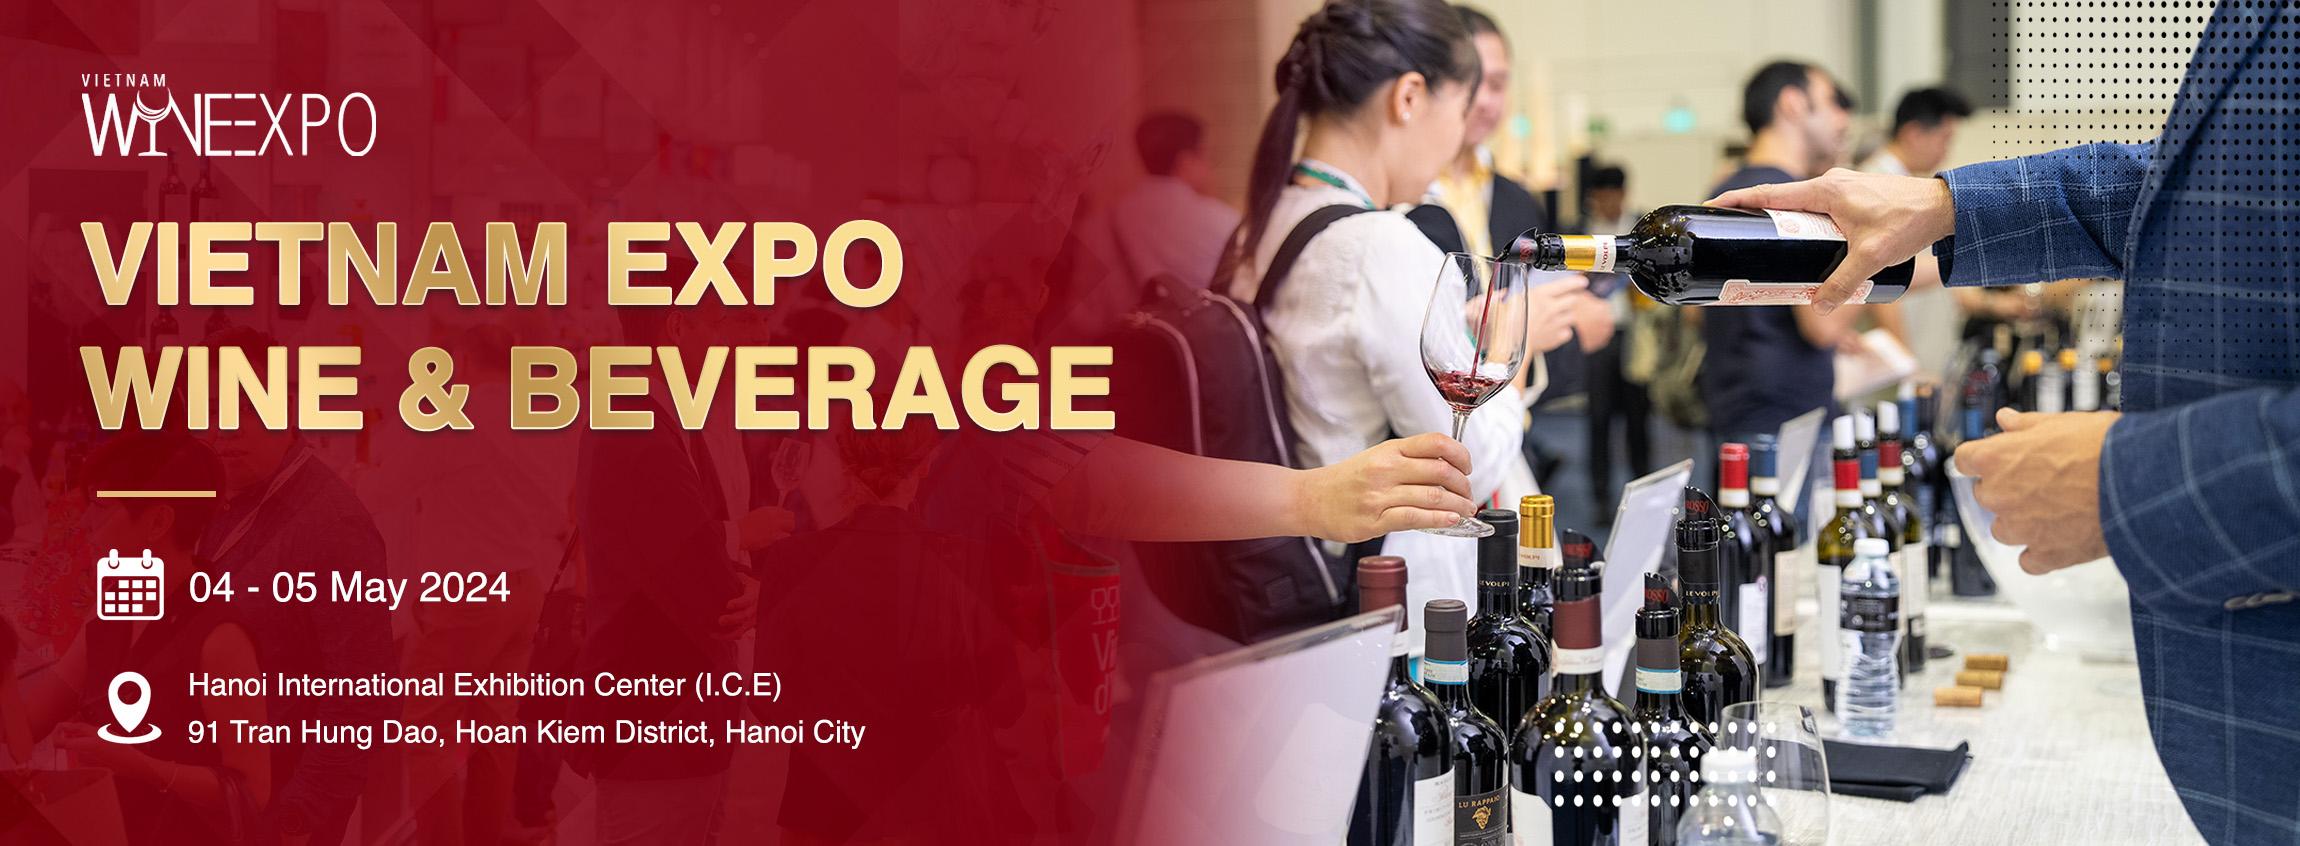 Sự kiện Vietnam Wine Expo - 7/2024 tại Hà Nội